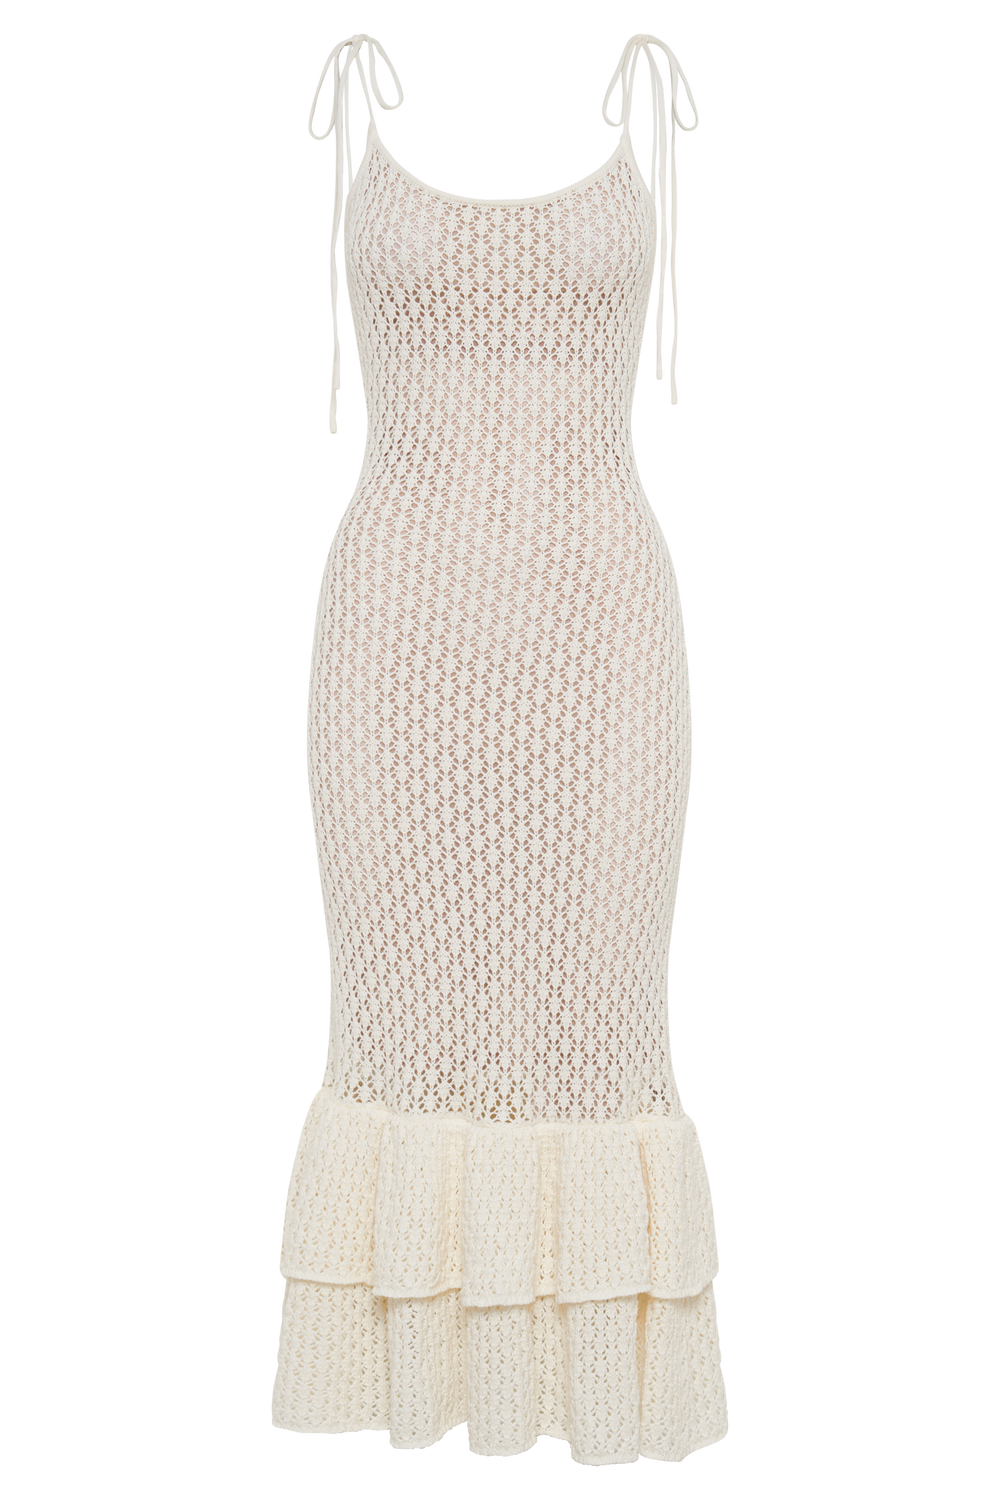 Bianca Knit Midi Dress - Ivory